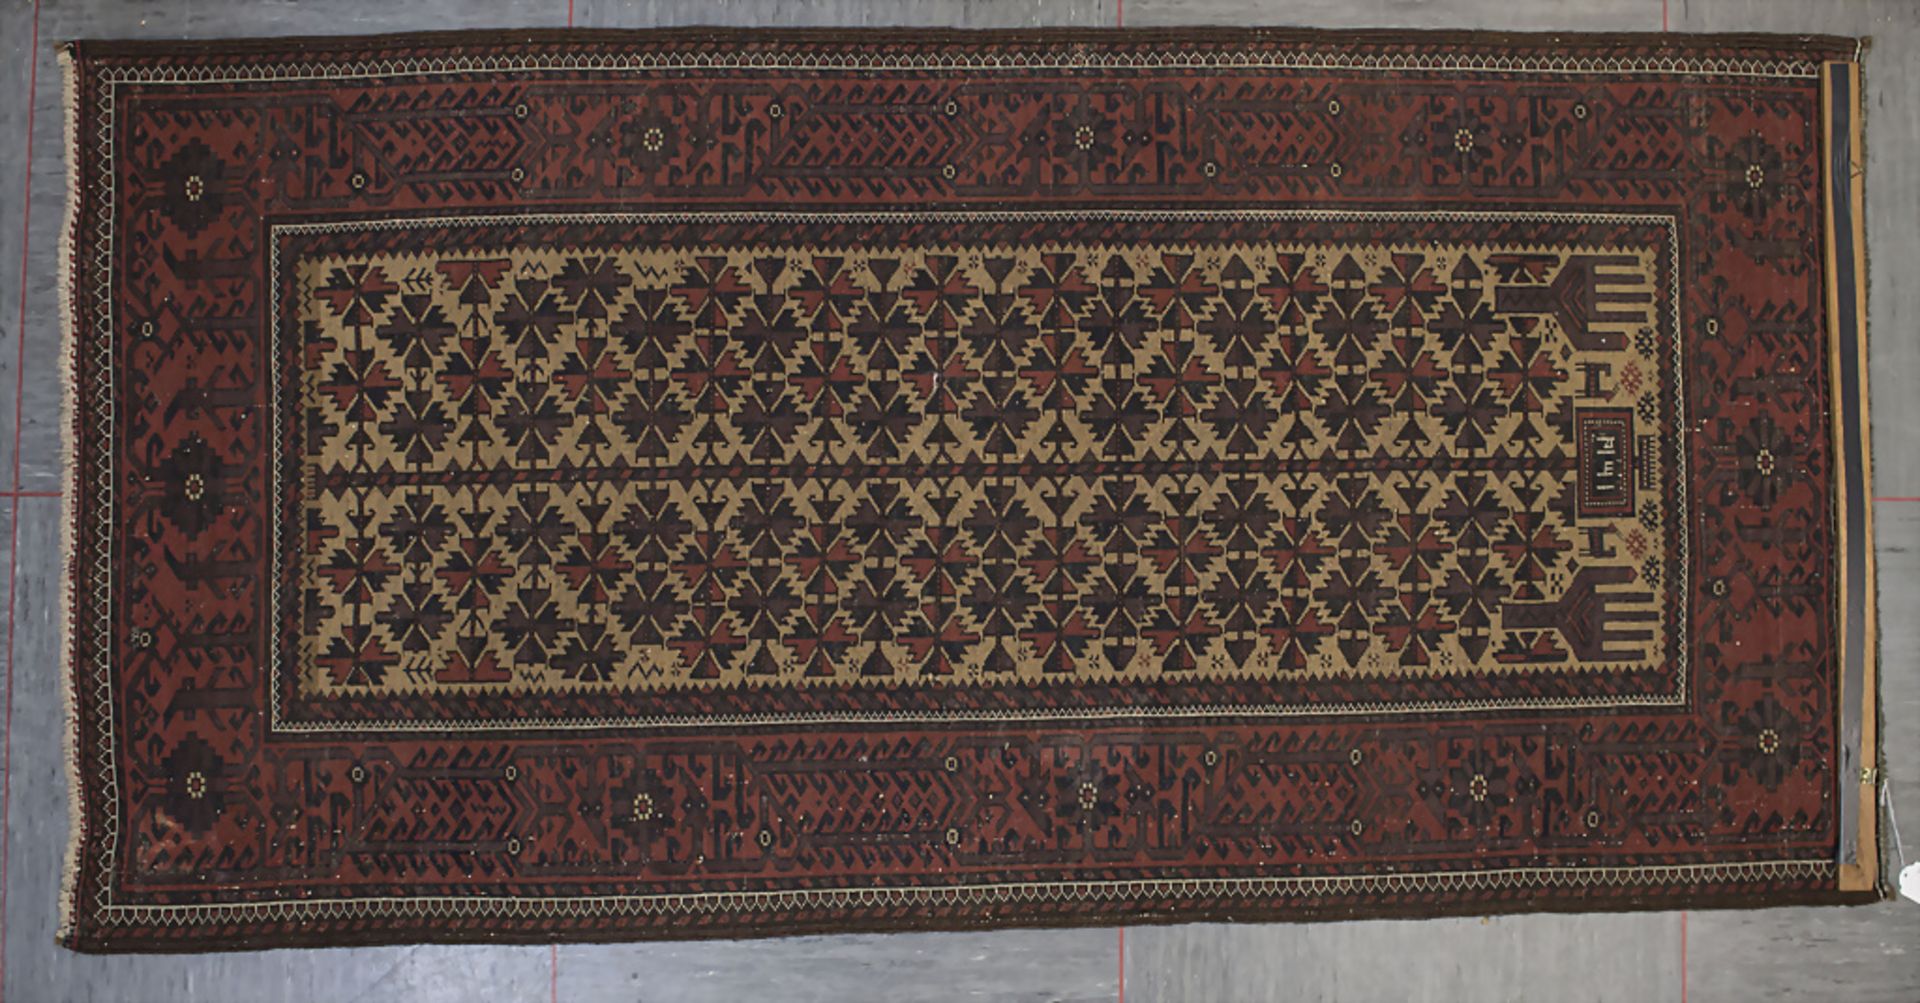 Wandteppich / A wall carpet, 20. Jh. - Image 3 of 4